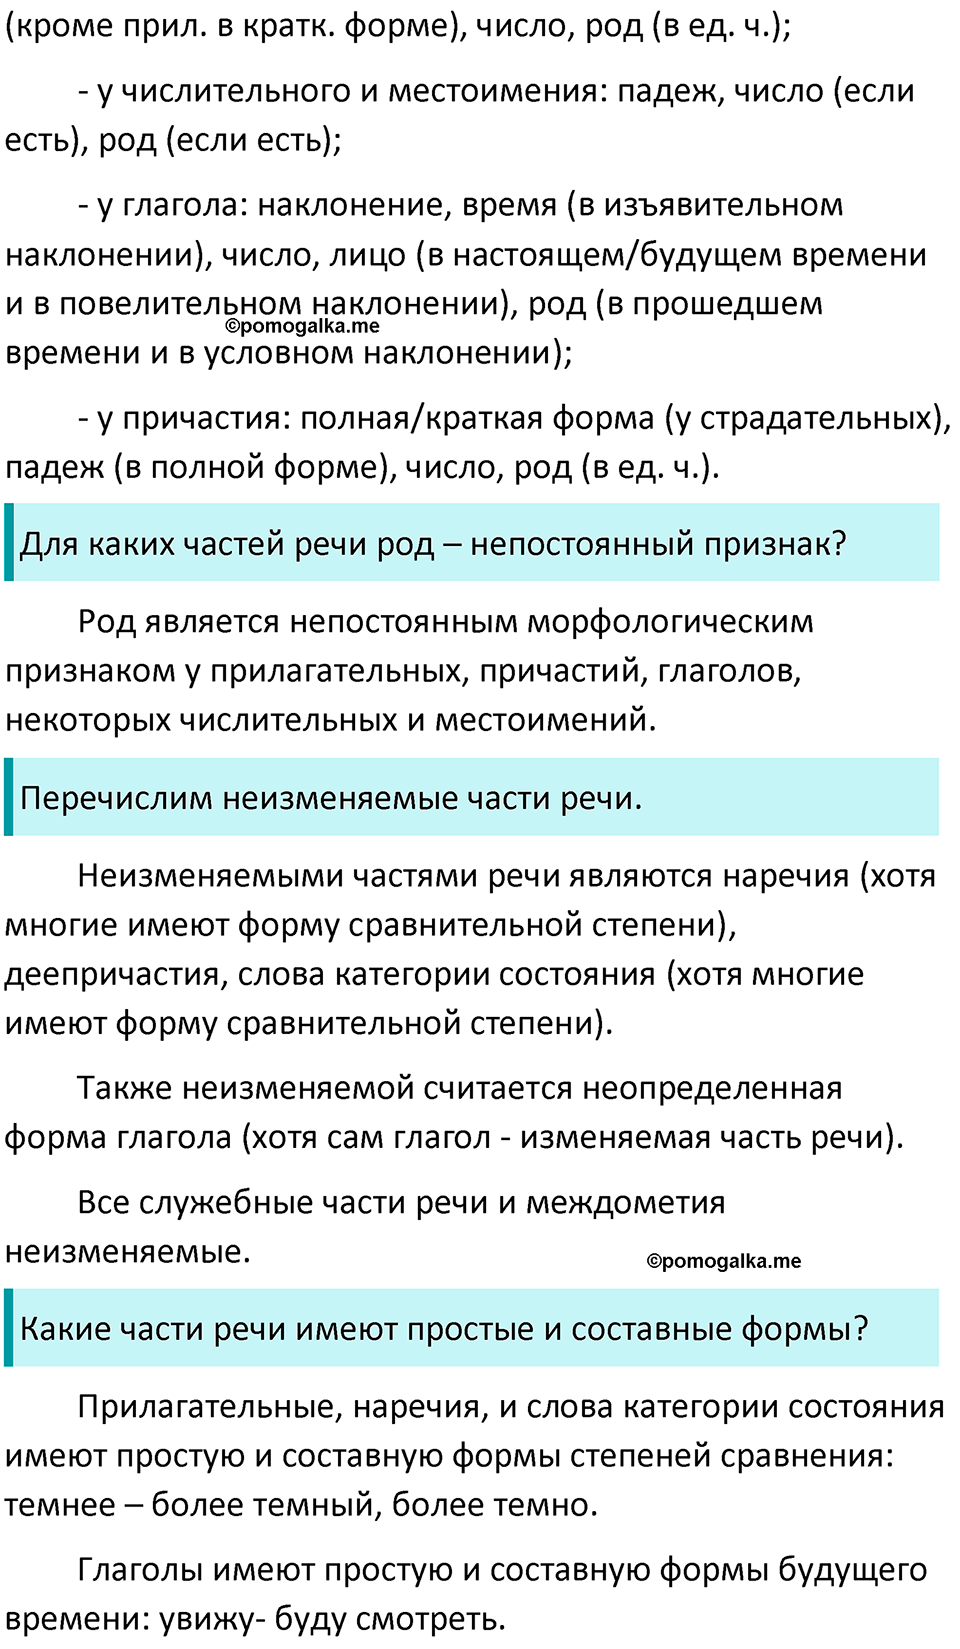 страница 109 вопросы к §82 русский язык 7 класс Баранов, Ладыженская 2021-2022 год